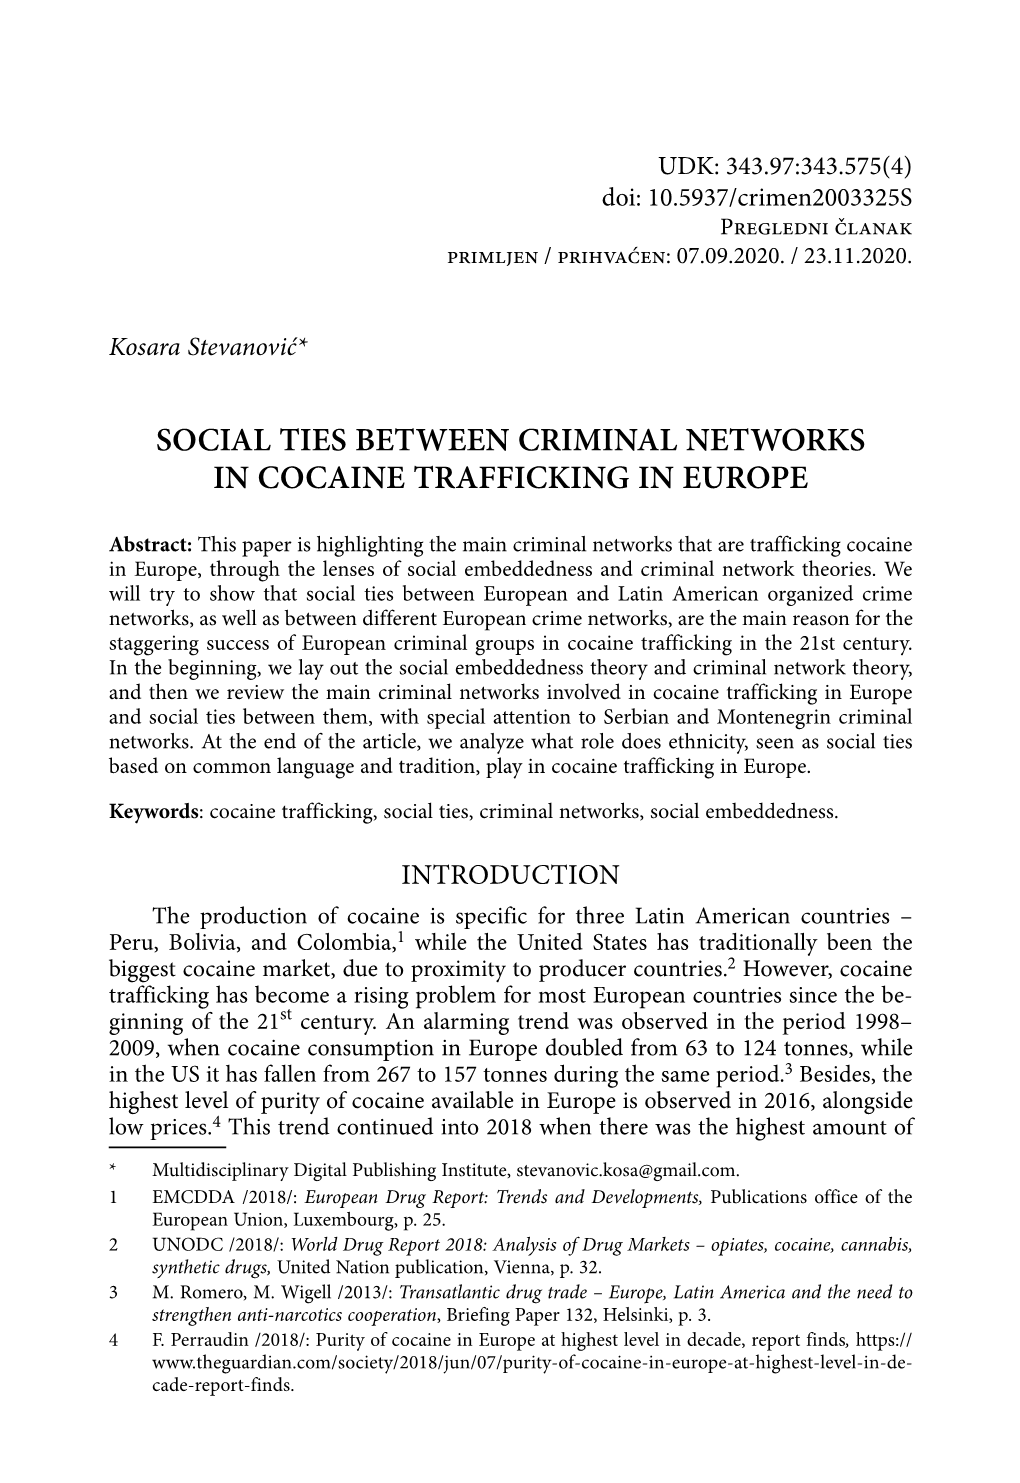 Kosara Stevanović, Social Ties Between Criminal Networks In